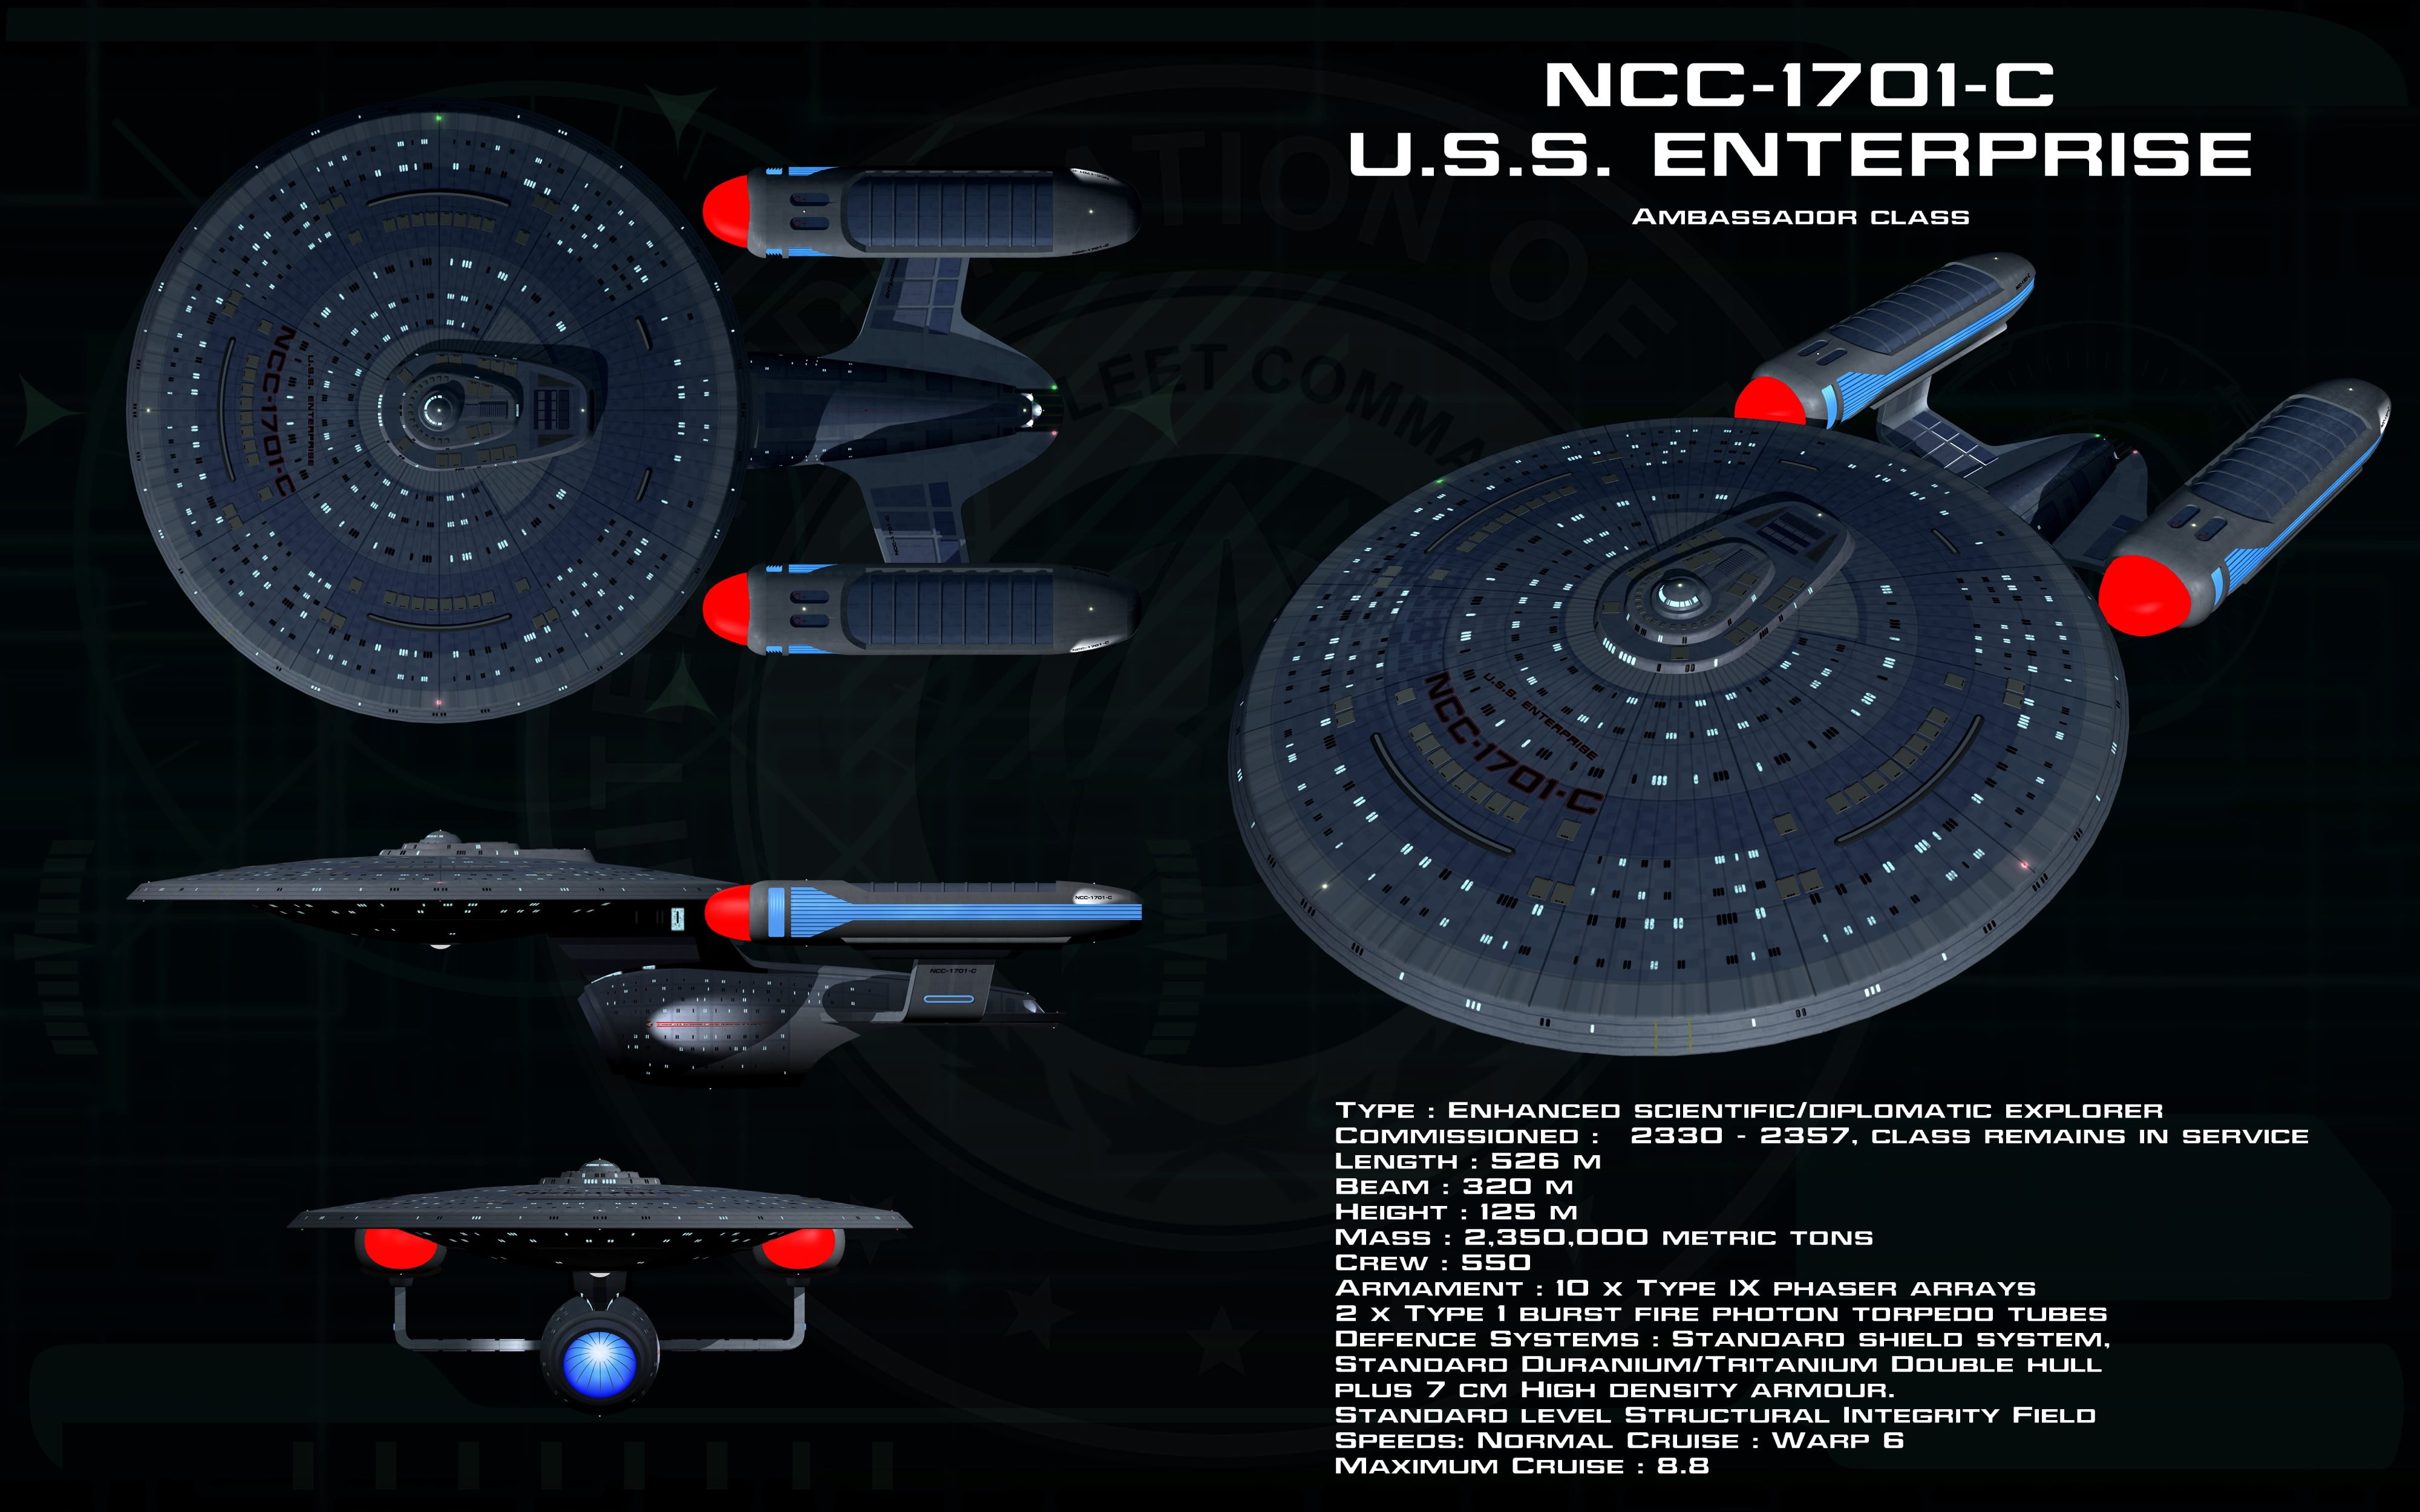 Star Trek USS Enterprise E Wallpaper